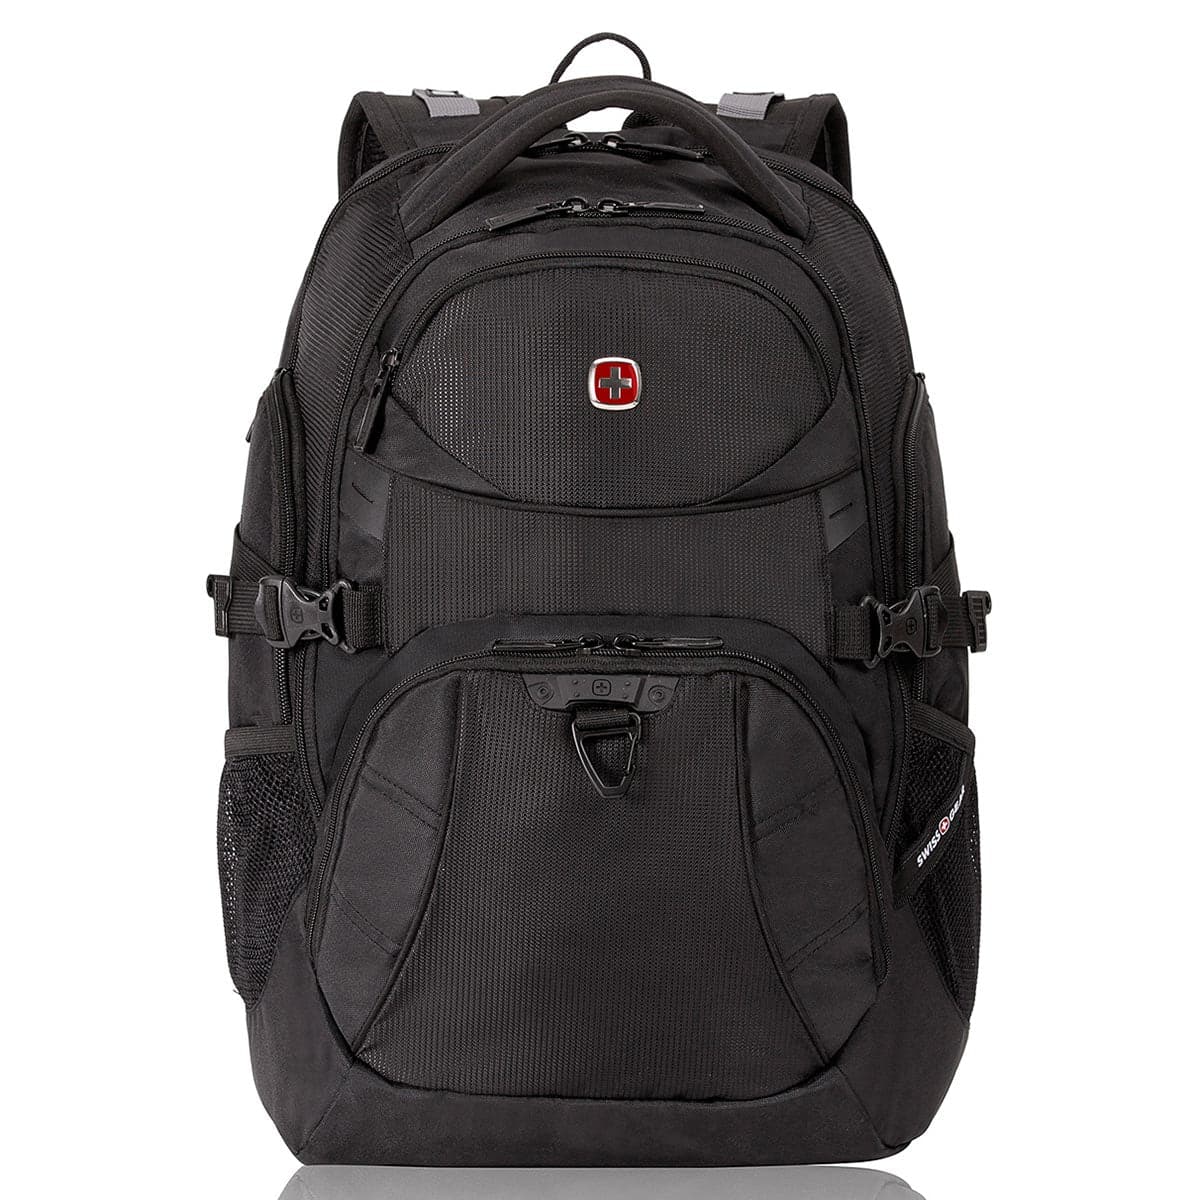 Swiss Gear 5901 Laptop Backpack